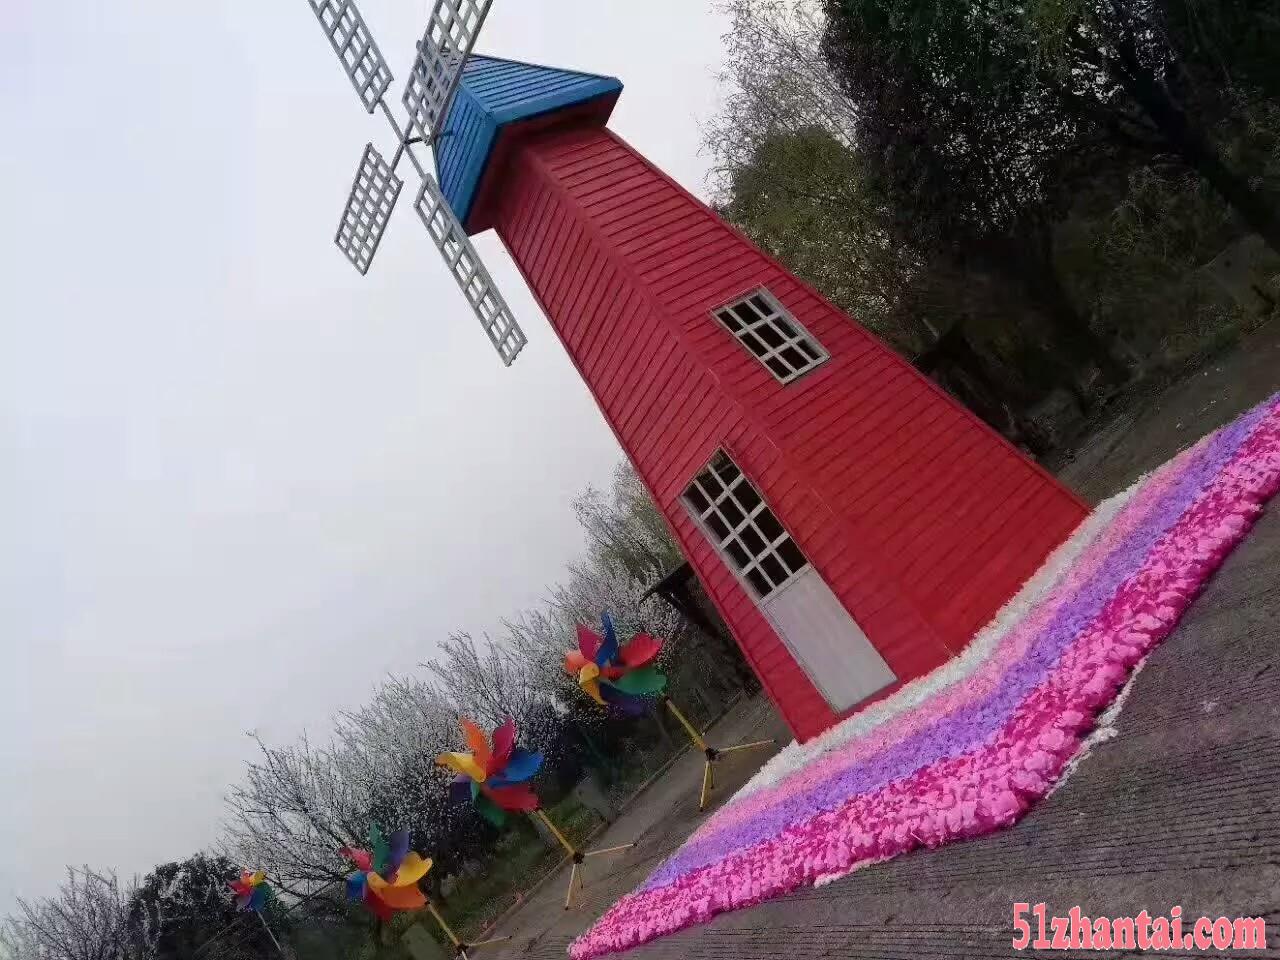 咸阳厂家制作荷兰风车模型埃菲尔铁塔展览租赁出售-图2